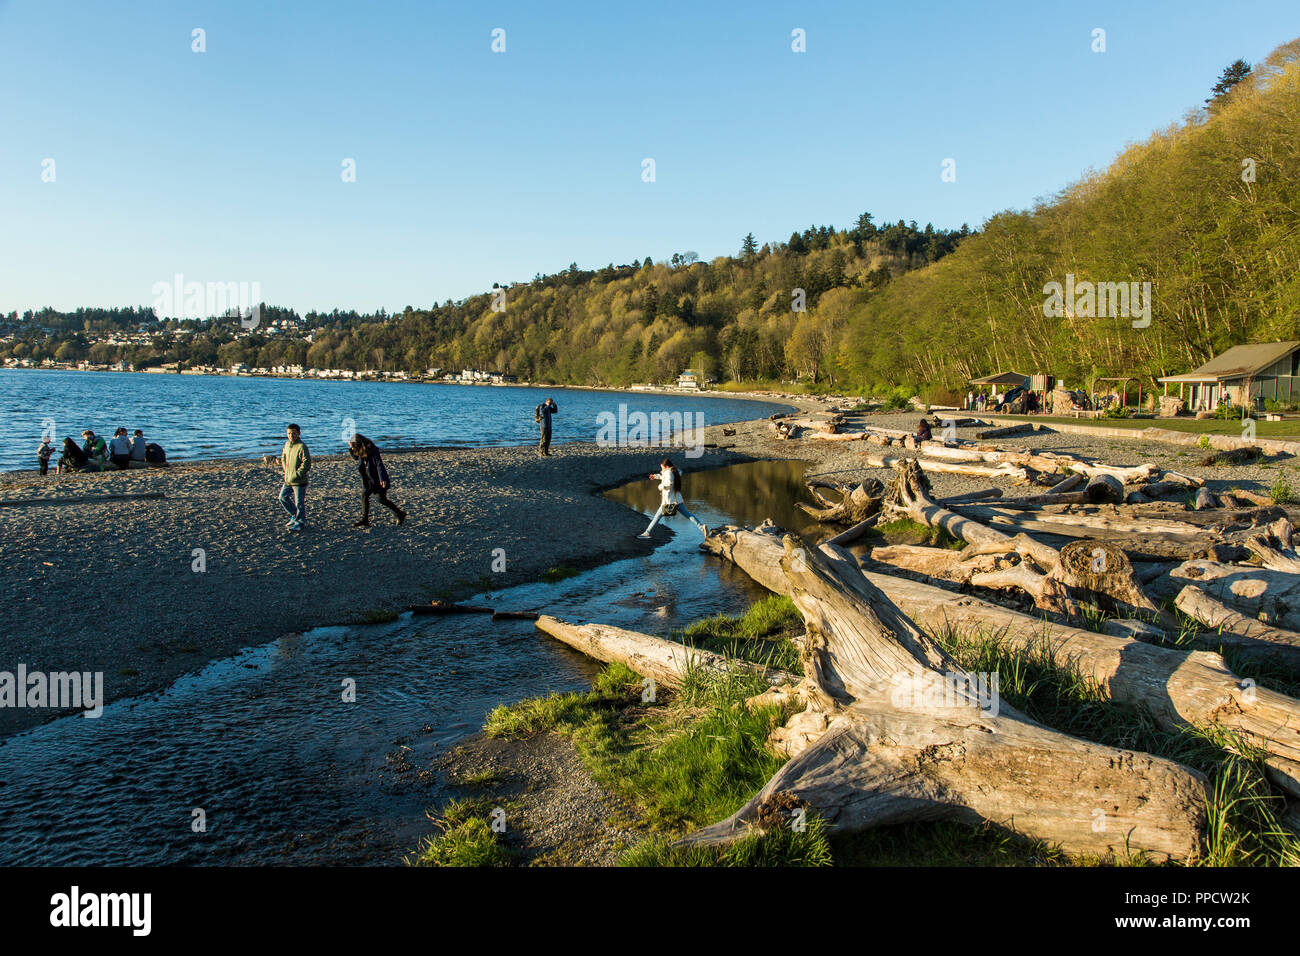 Cielo claro sobre la gente relajándose en la playa costera llena de driftwood, Seattle, Washington, EE.UU. Foto de stock